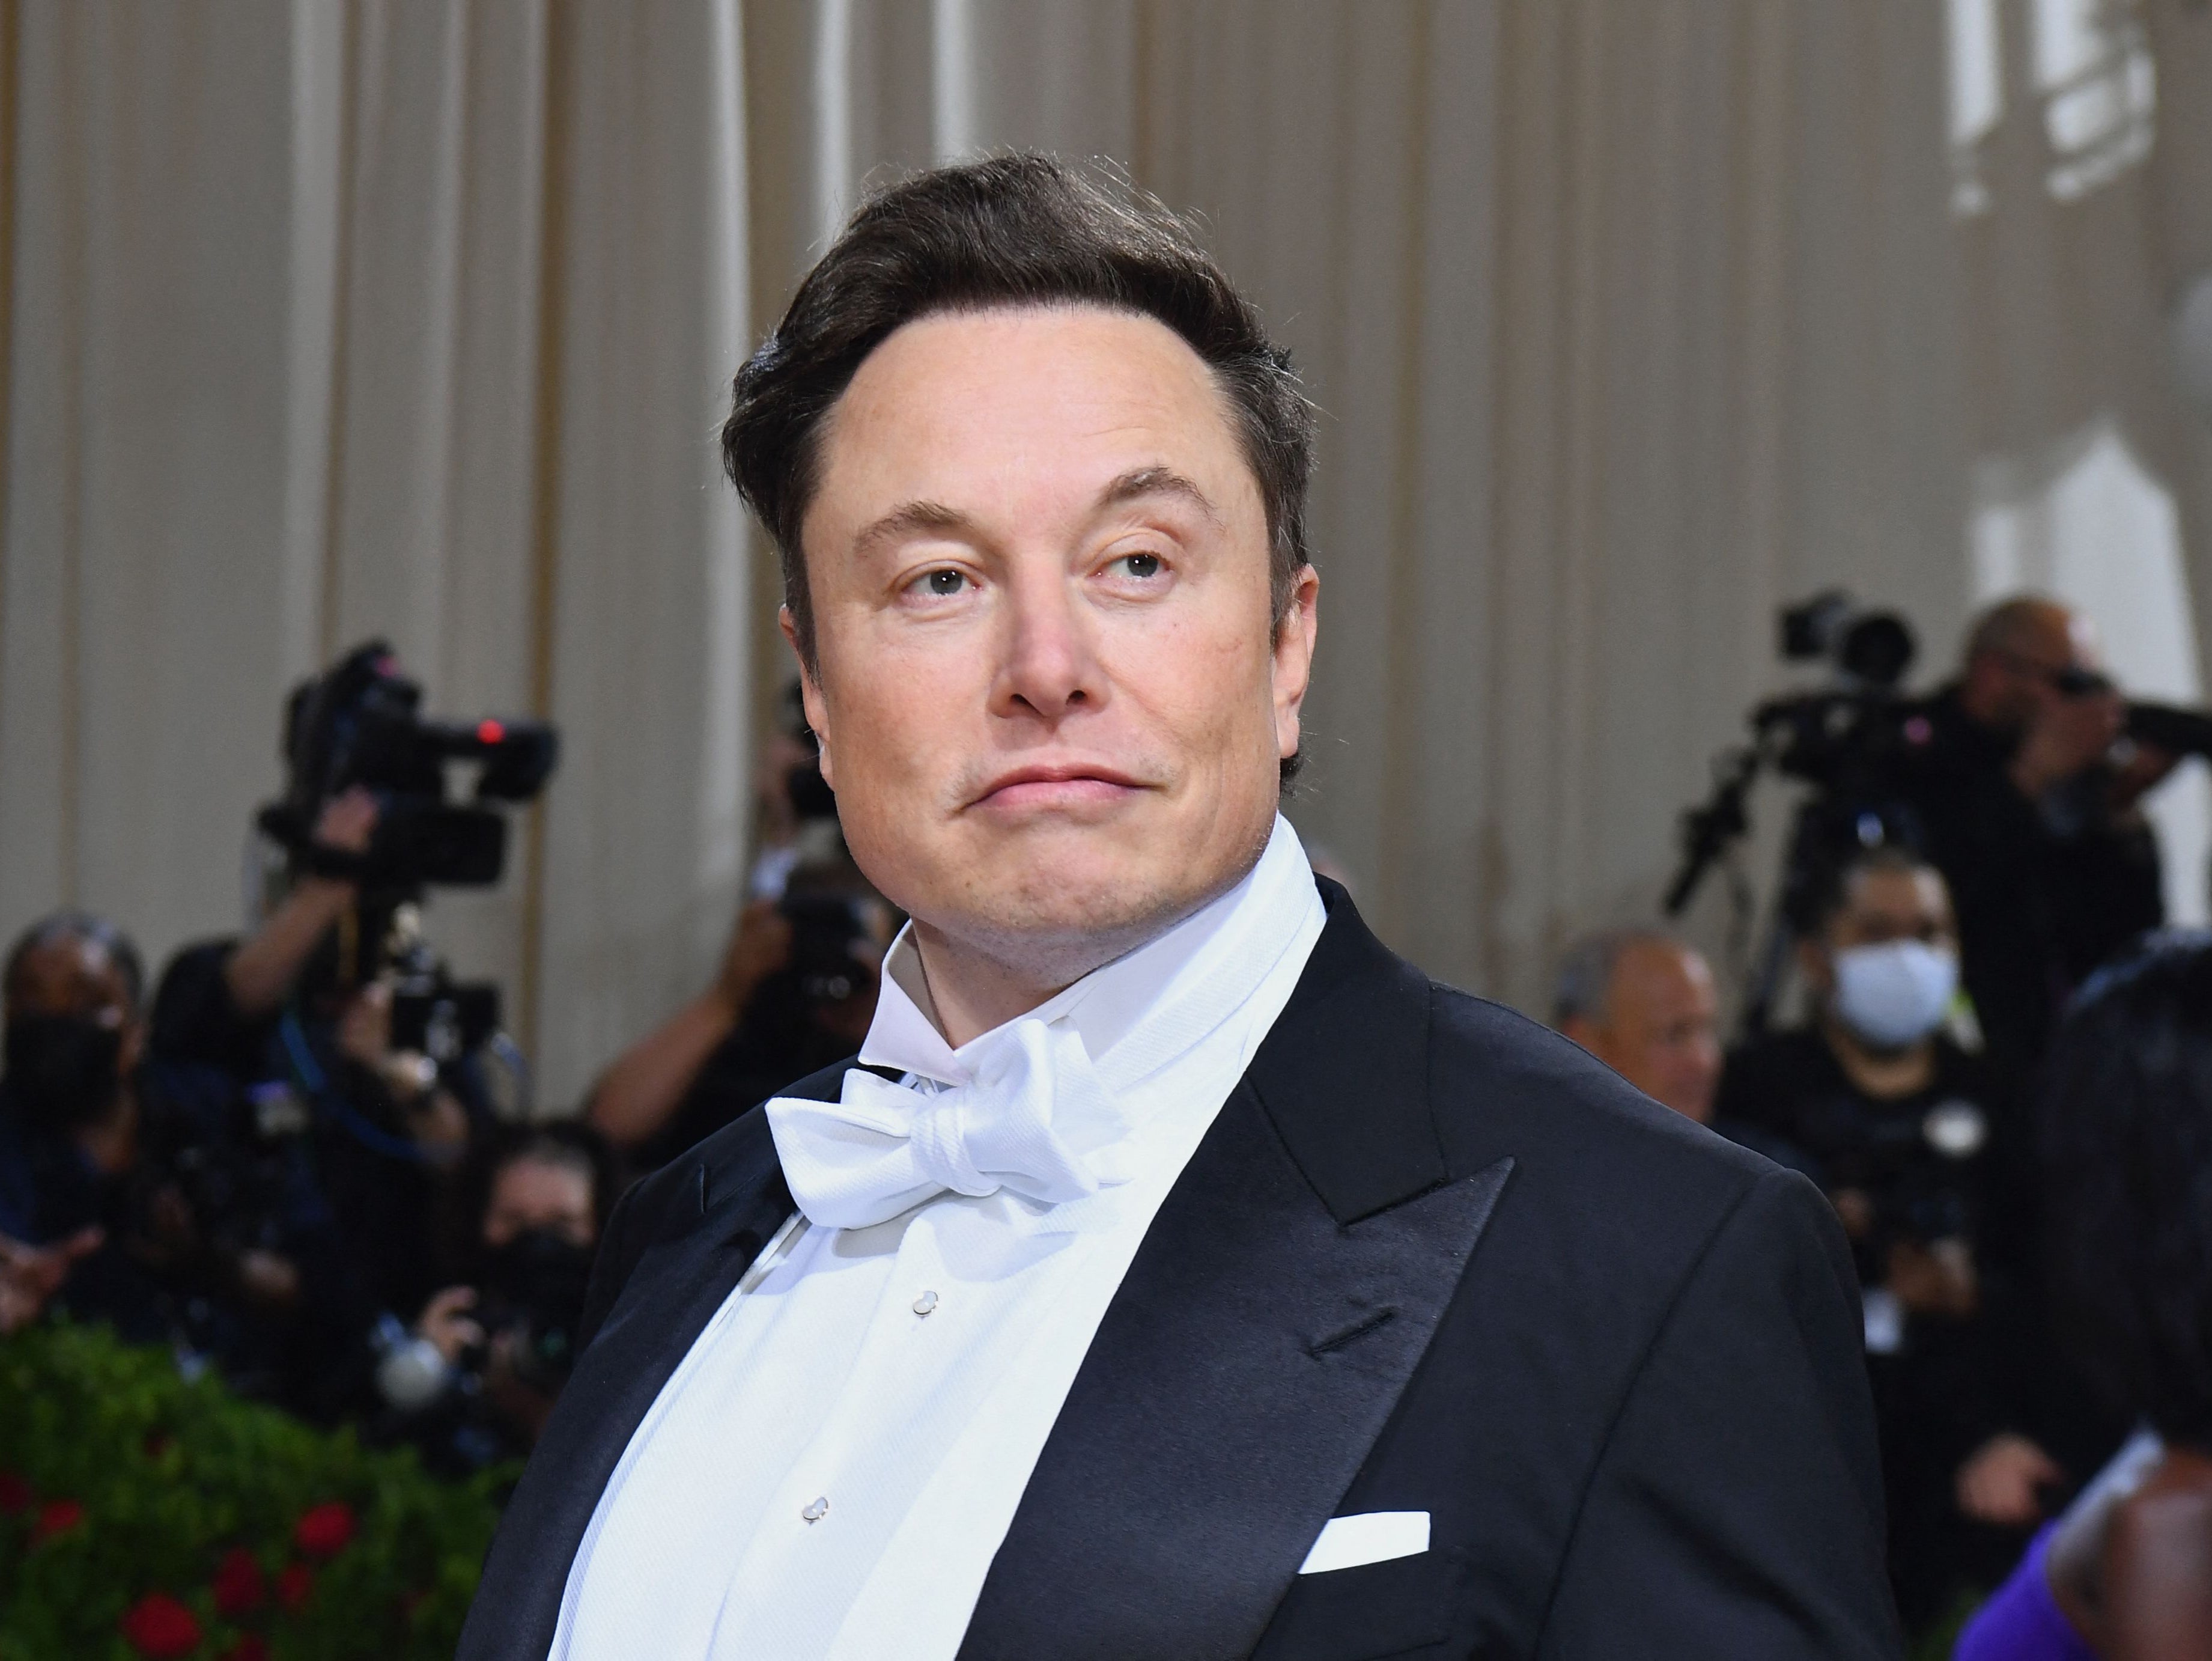 Elon Musk, jefe de Tesla, se ha comprometido a apoyar la libertad de expresión y a “derrotar a los ‘bots’ de ‘spam’” tras la adquisición de Twitter